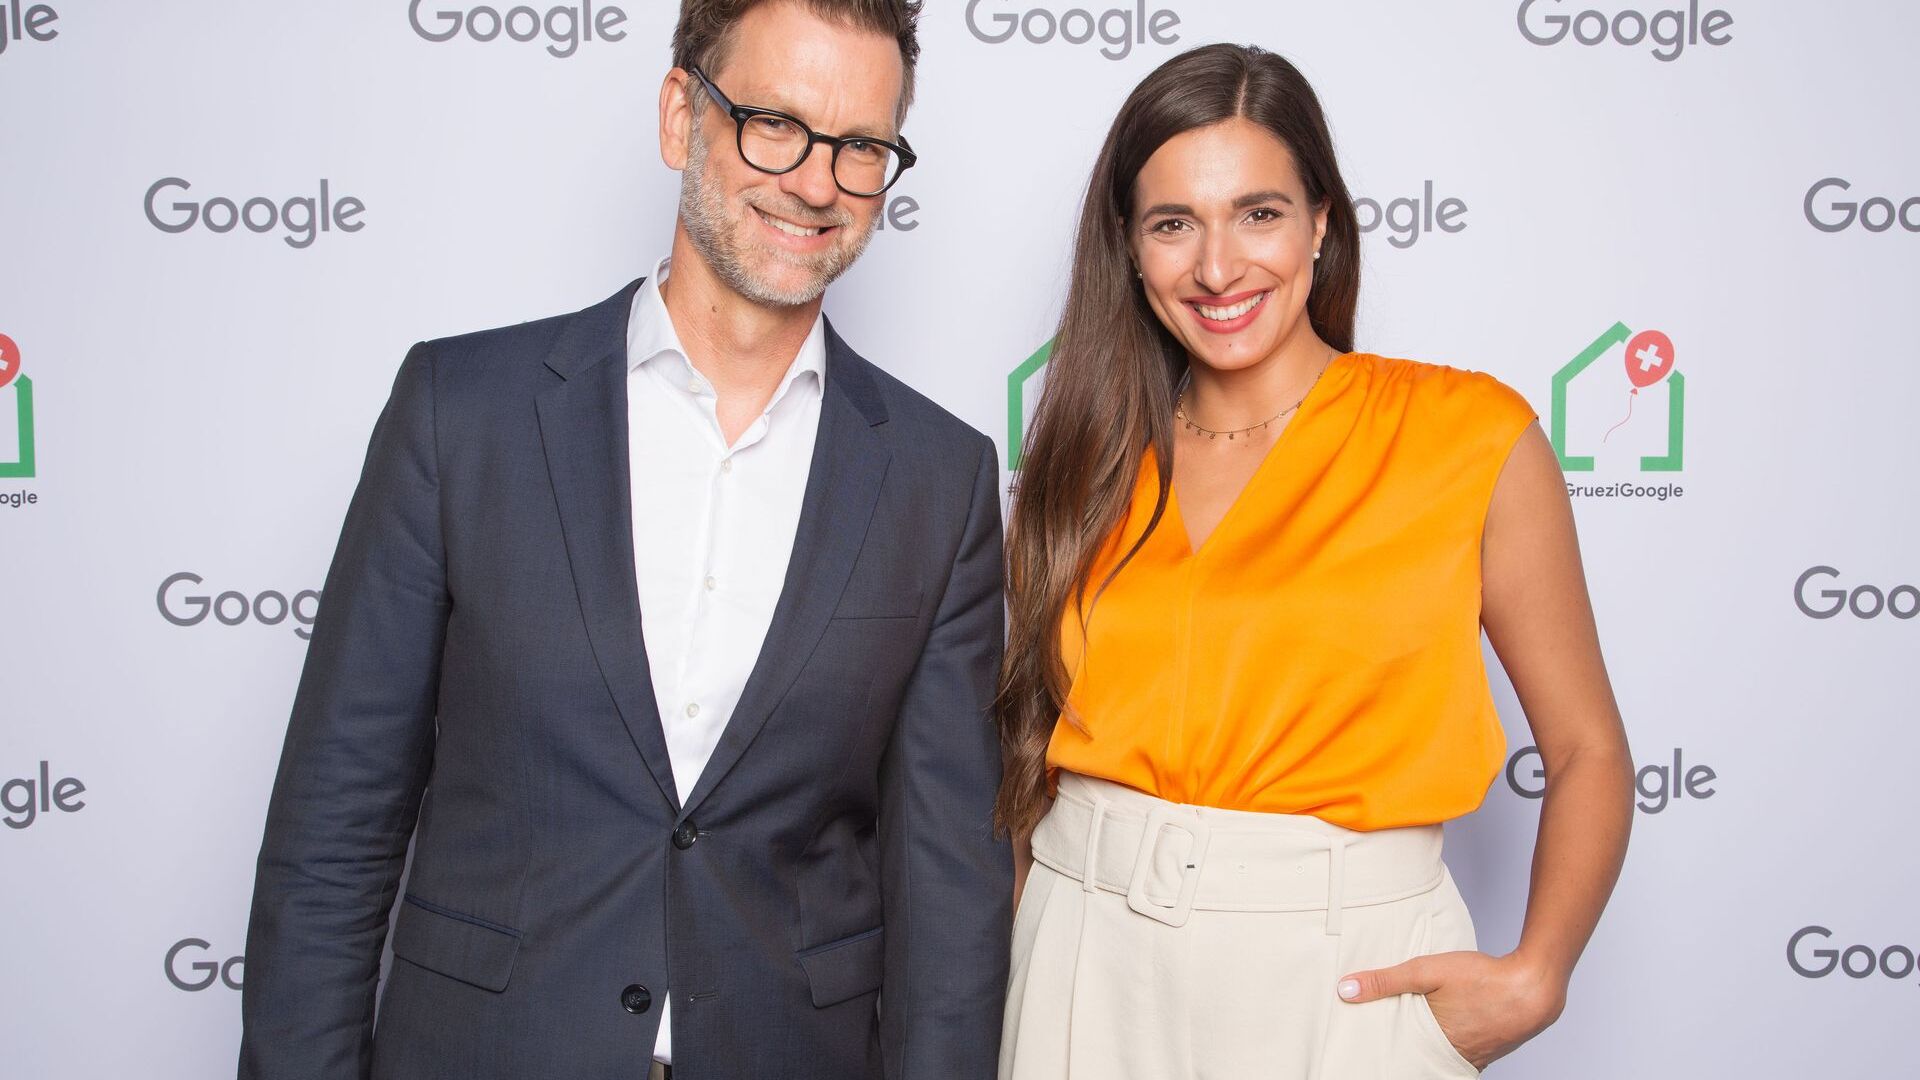 Andreas Briese, landschef YouTube Tyskland och regionchef för Centraleuropa, och Sally från Sallys Welt (YouTube Channel) deltog i den officiella invigningen av nya Google Campus Europaallee i Zürich den 27 juni 2022